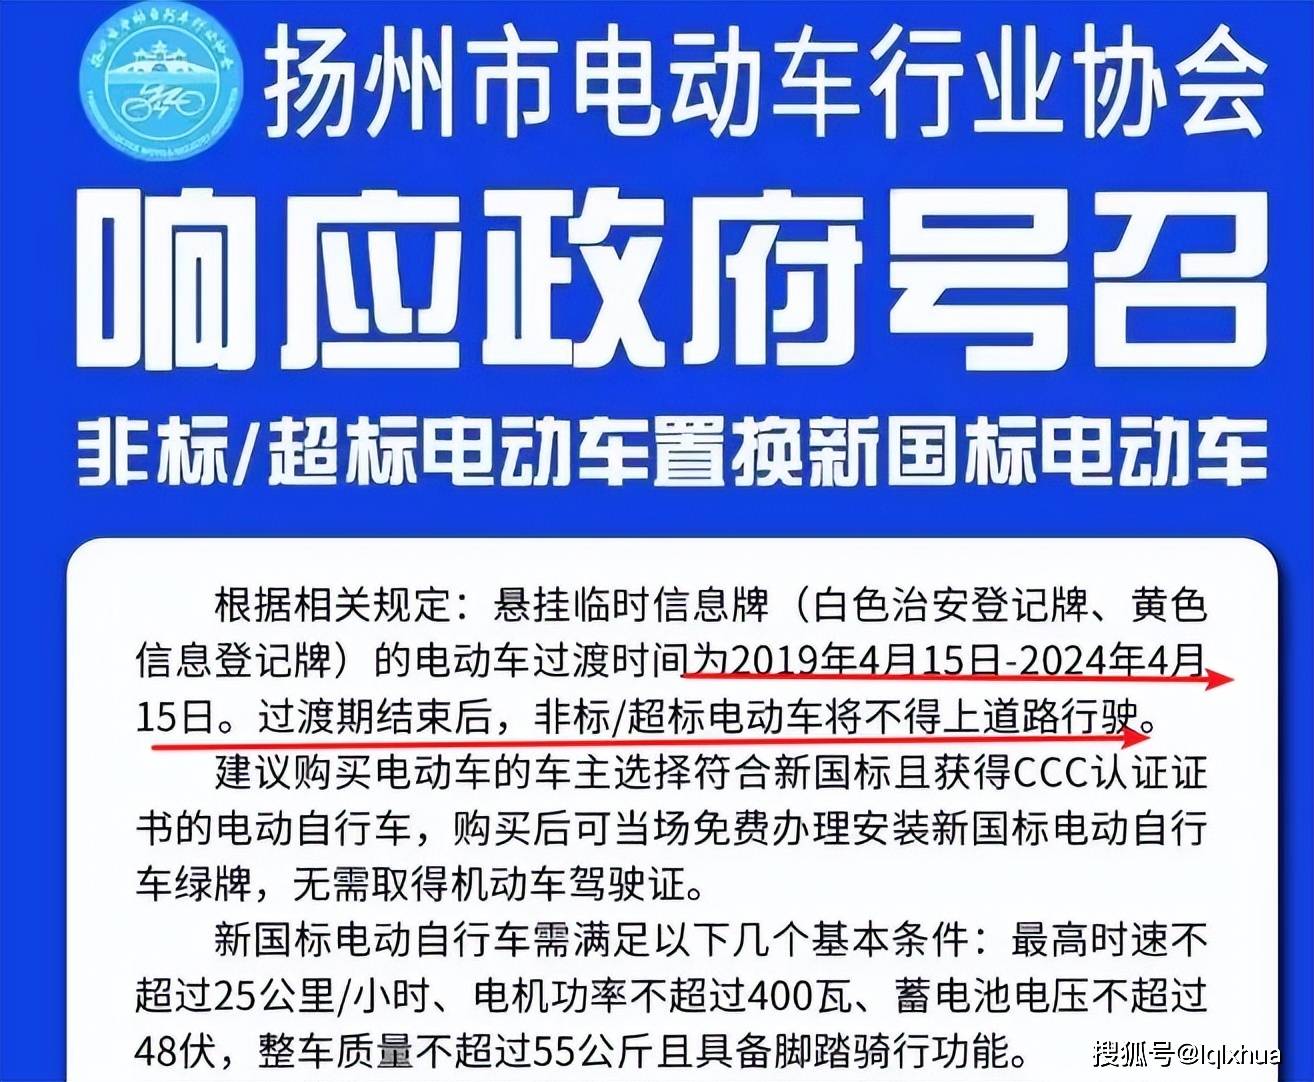 2024年4月15日起,扬州超标电动车将迎新规,过渡期结束禁止上路